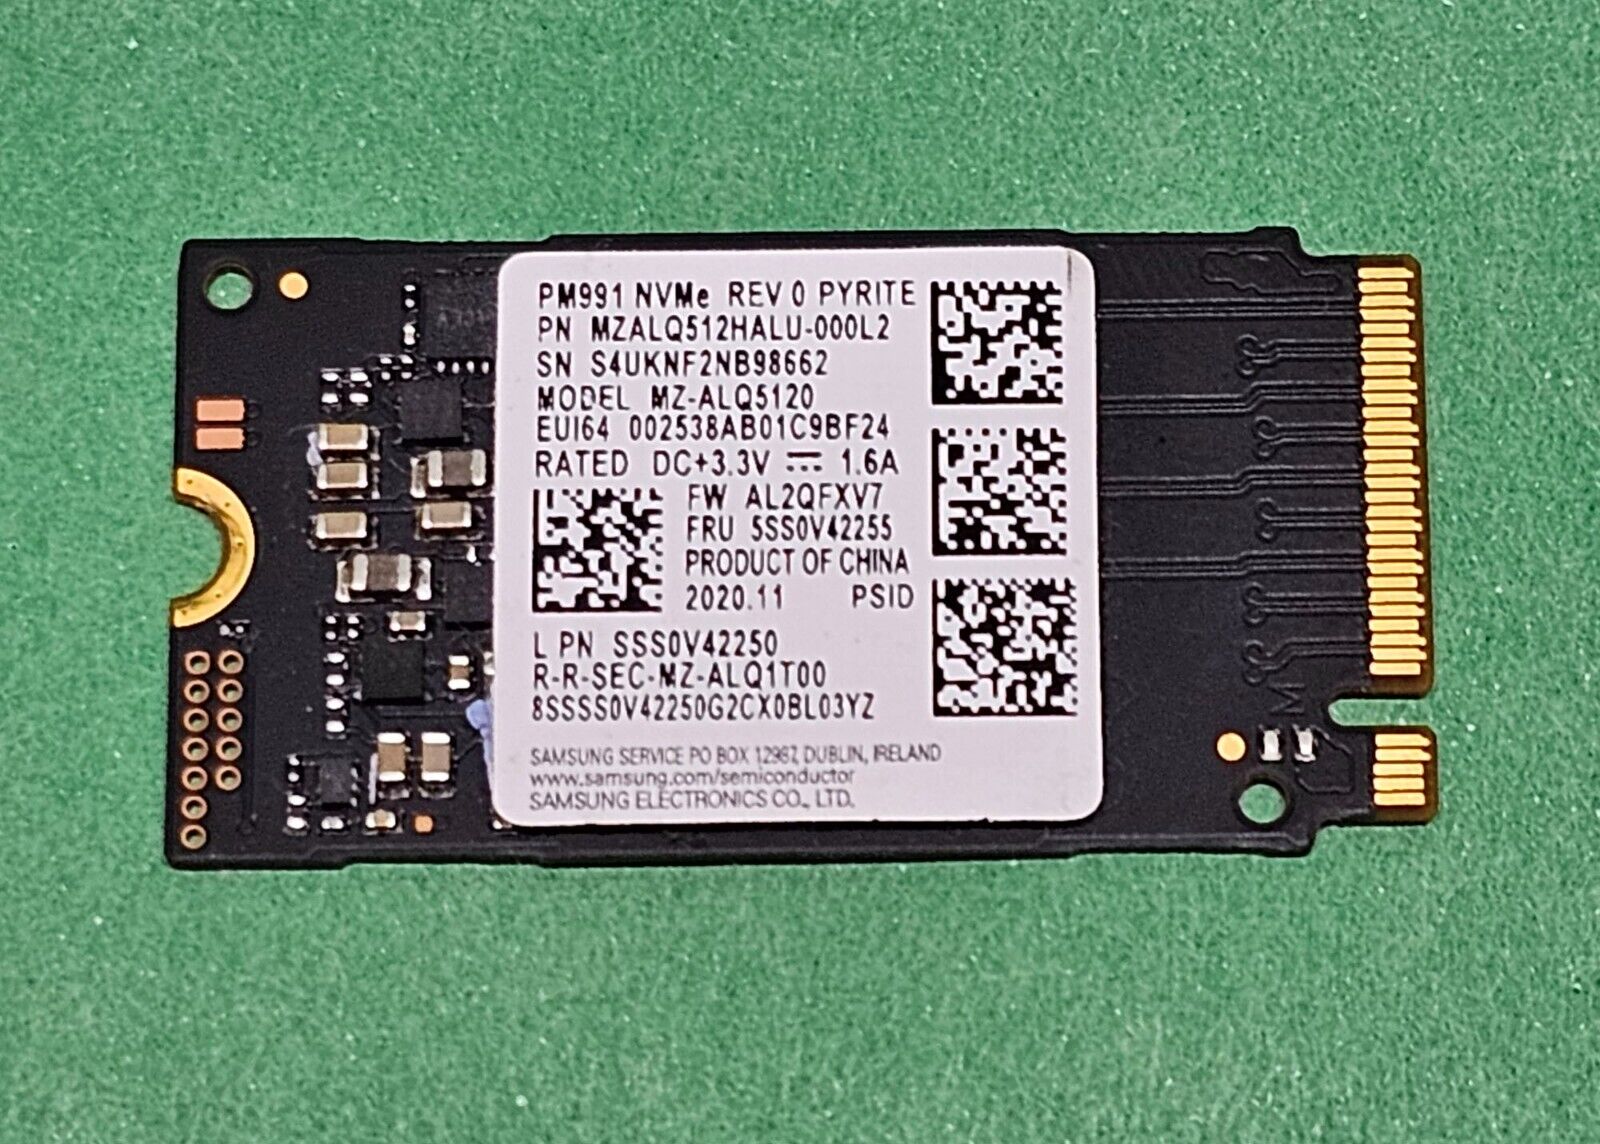 Samsung PM991 MZALQ512HALU-000L2 512GB M.2 2242 PCIe NVMe SSD Drive